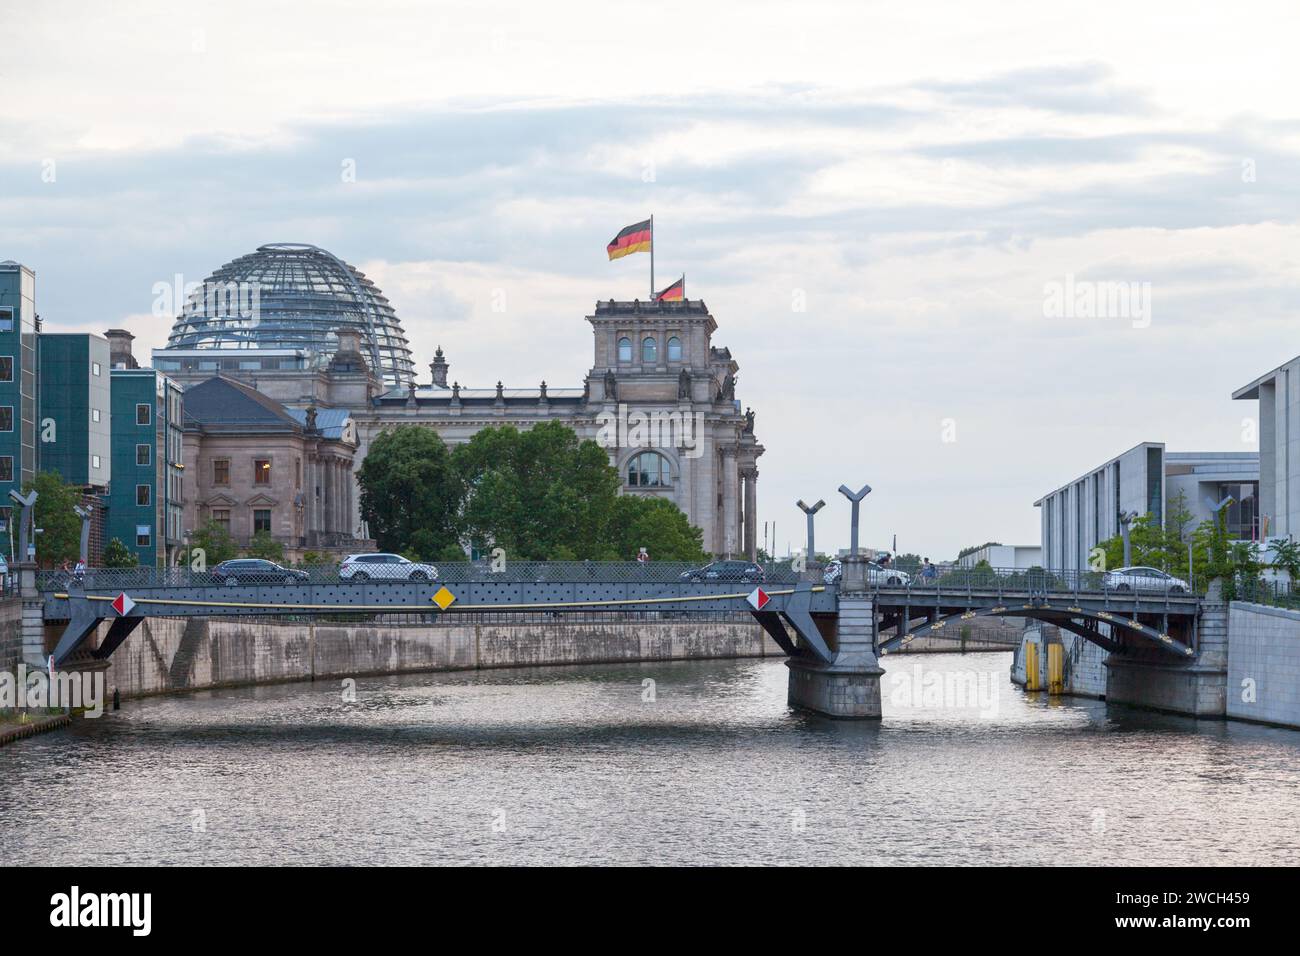 Berlino, Germania - 03 giugno 2019: Il Reichstag è un edificio storico costruito per ospitare la dieta Imperiale (Reichstag) dell'Impero tedesco. T Foto Stock